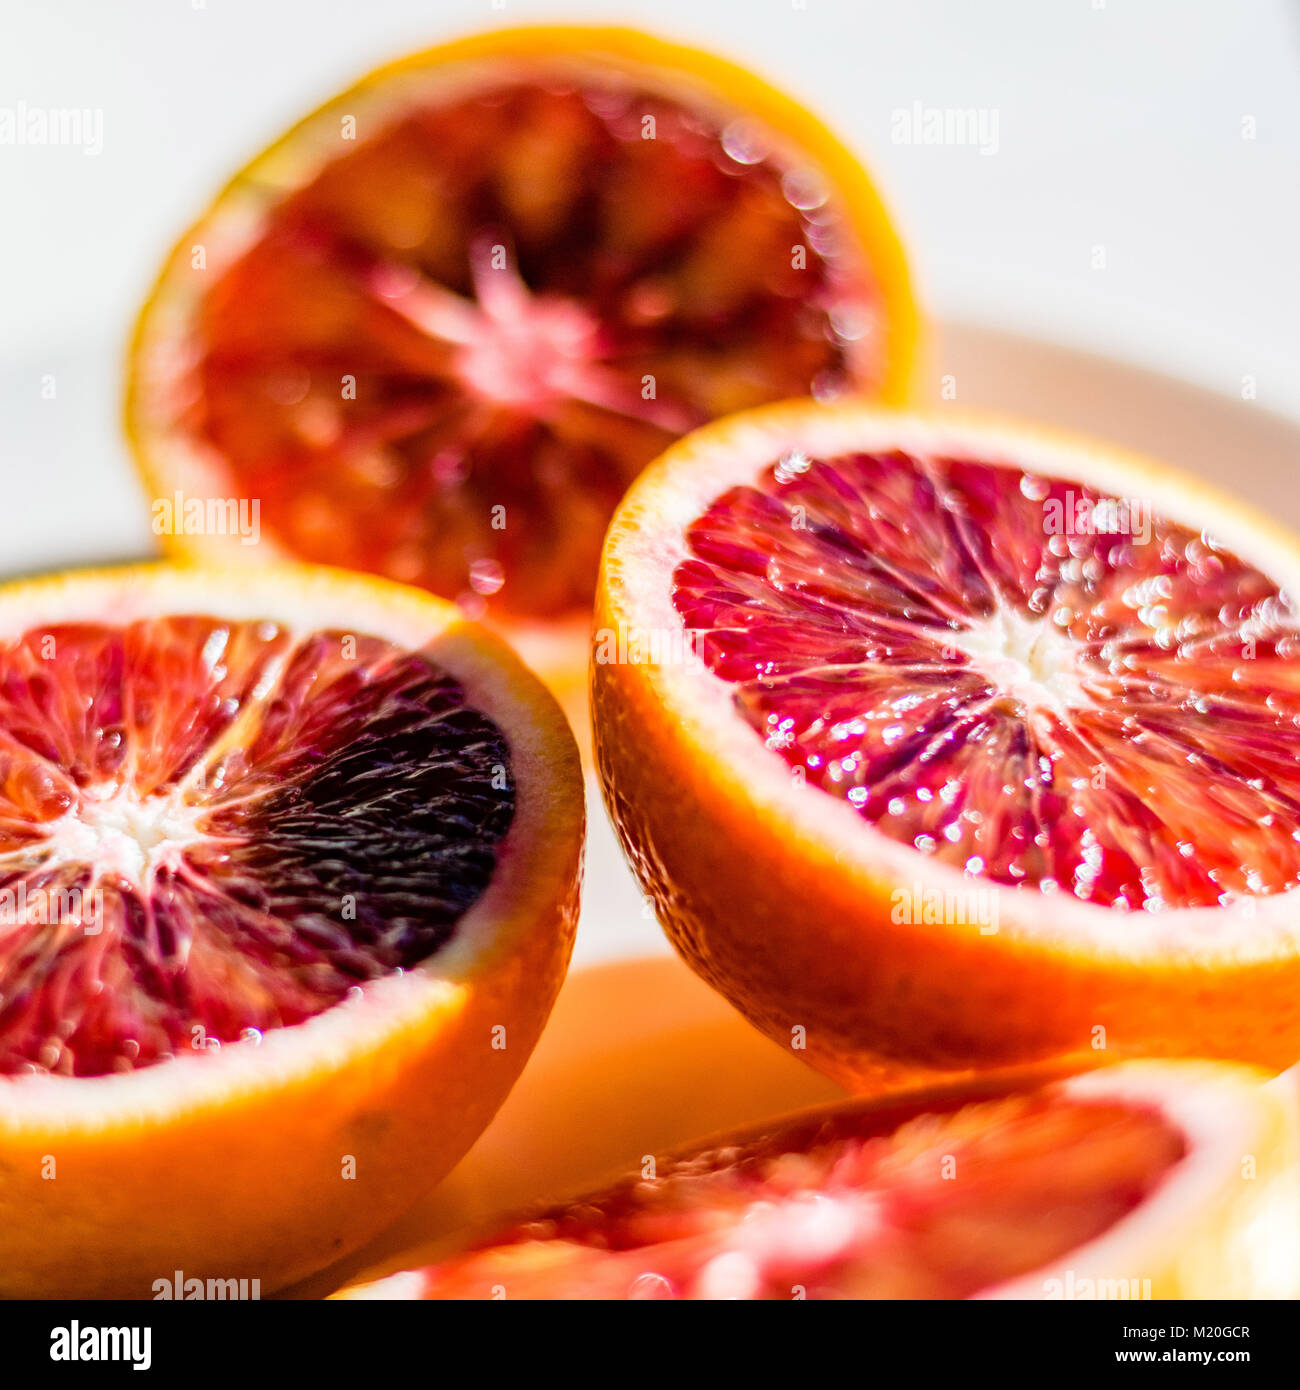 Les moitiés d'orange sanguine rouge, macro photo alimentaire, selective focus. Les agrumes frais détails, gros plan, high angle view. Banque D'Images